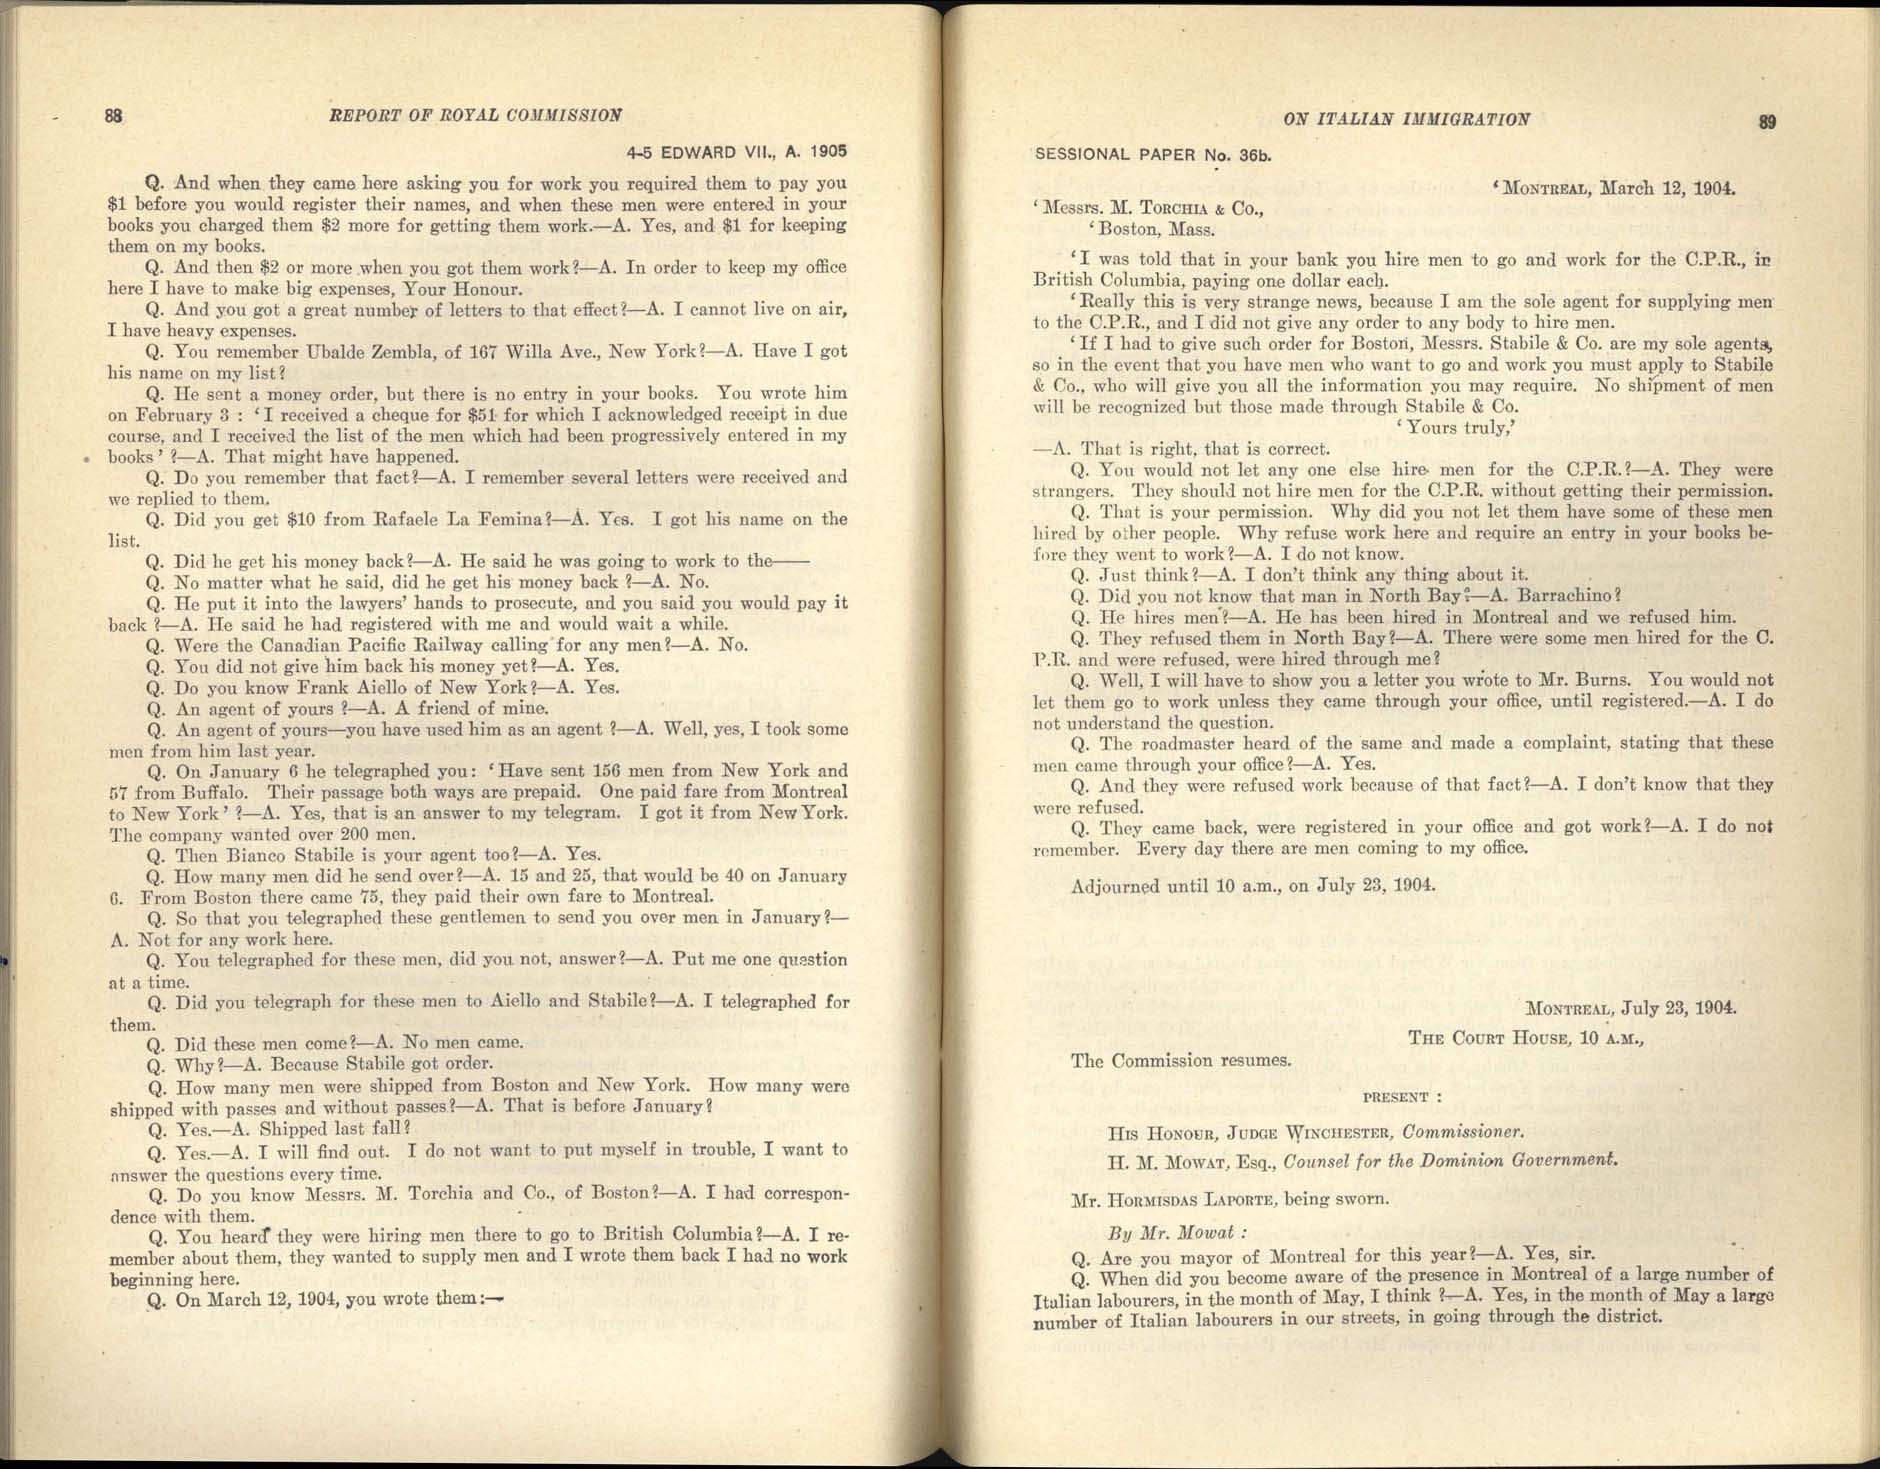 Page 88, 89 Commission royale sur l’immigration italienne, 1904-1905